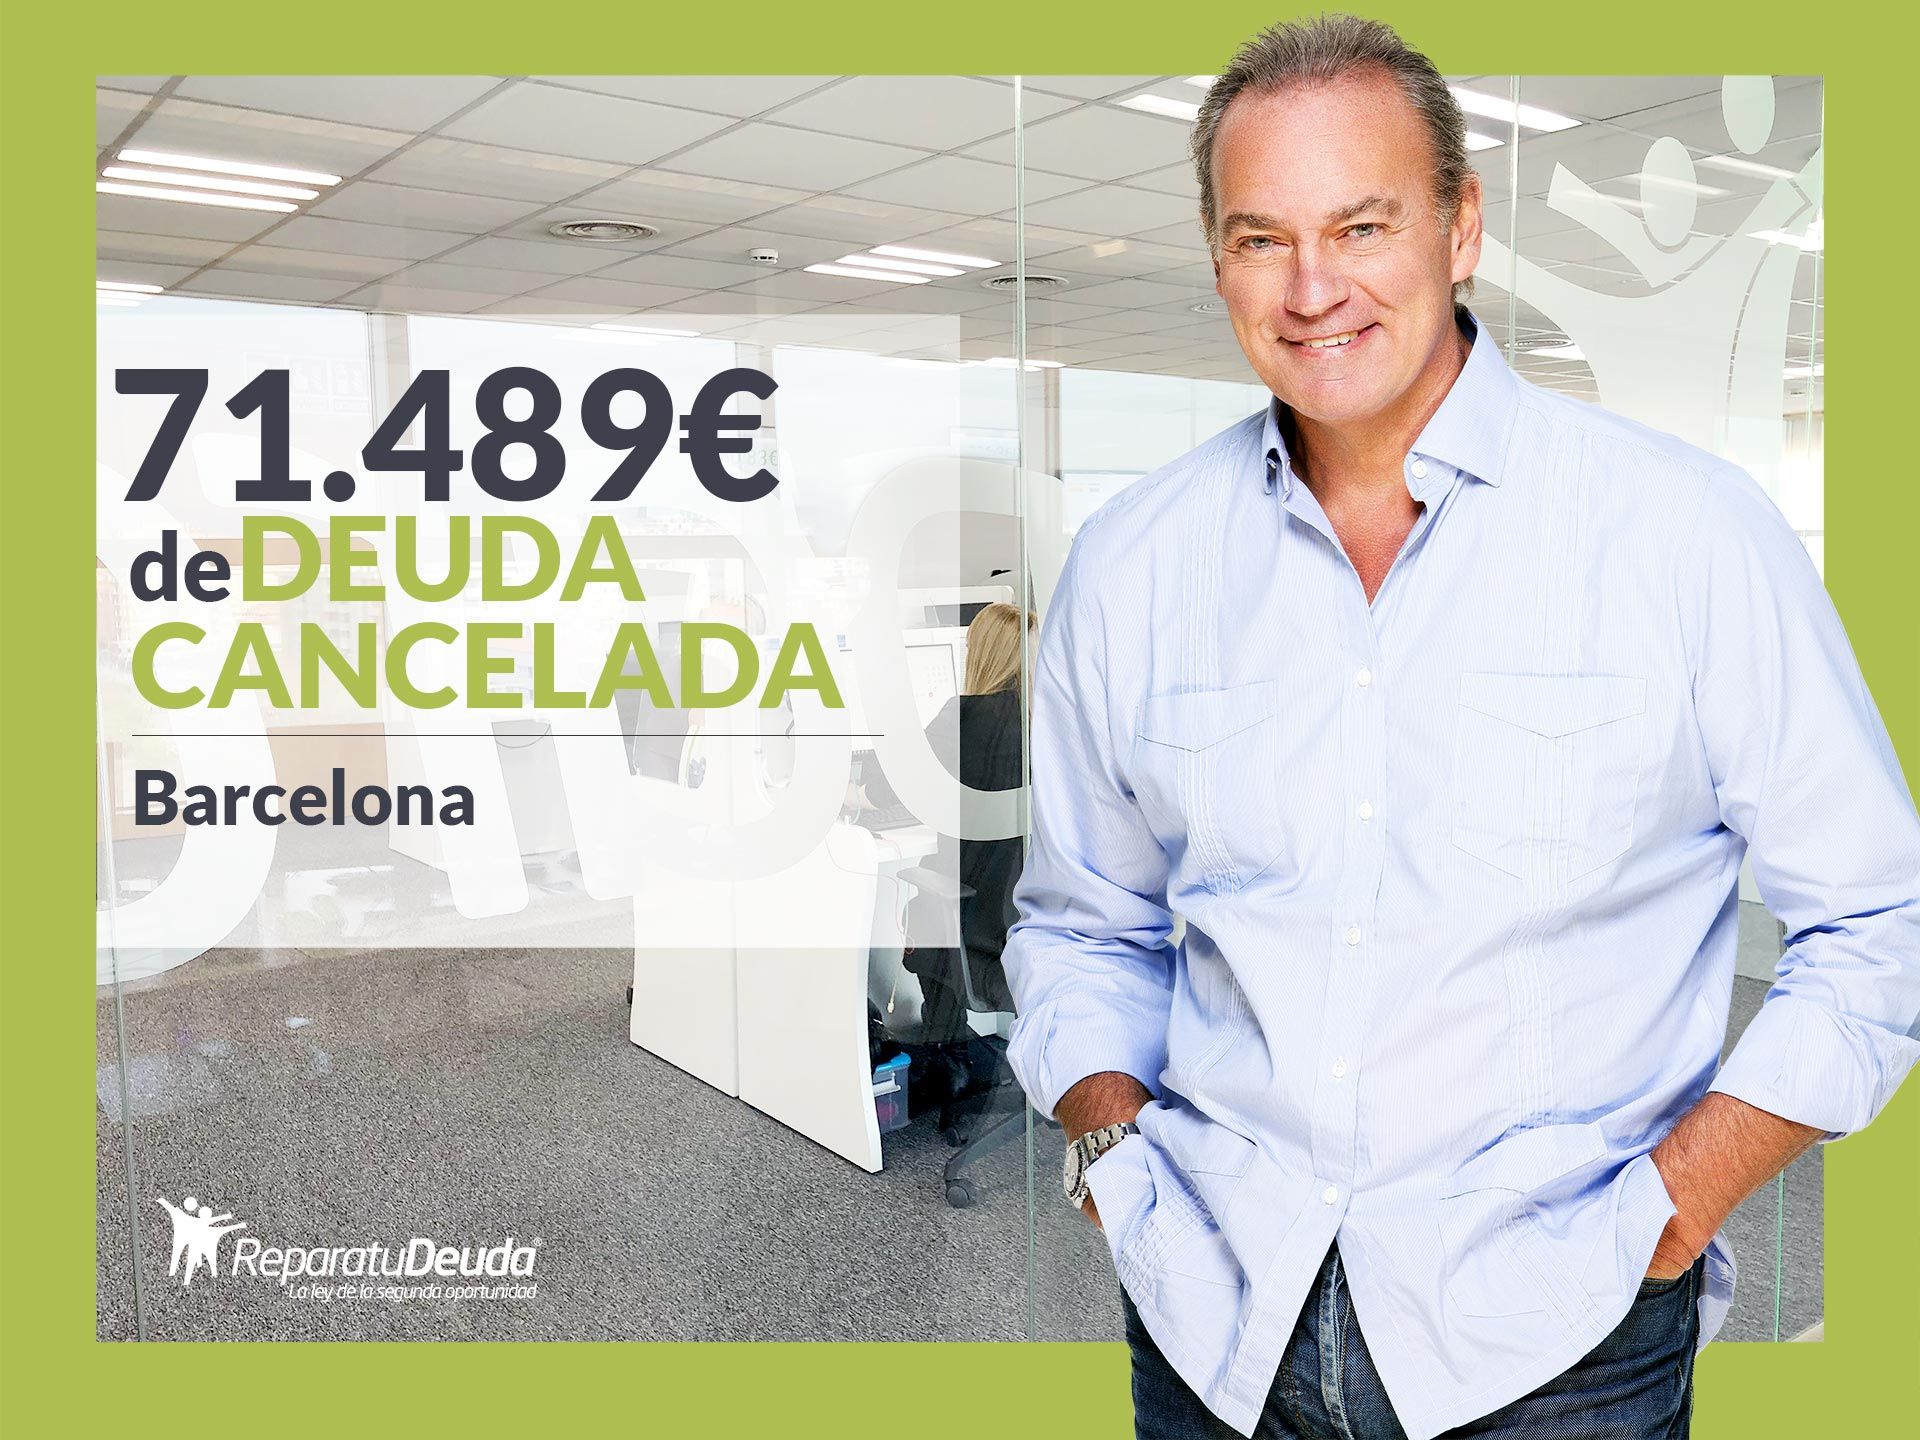 Repara tu Deuda Abogados cancela 71.489? en Barcelona (Catalunya) con la Ley de Segunda Oportunidad